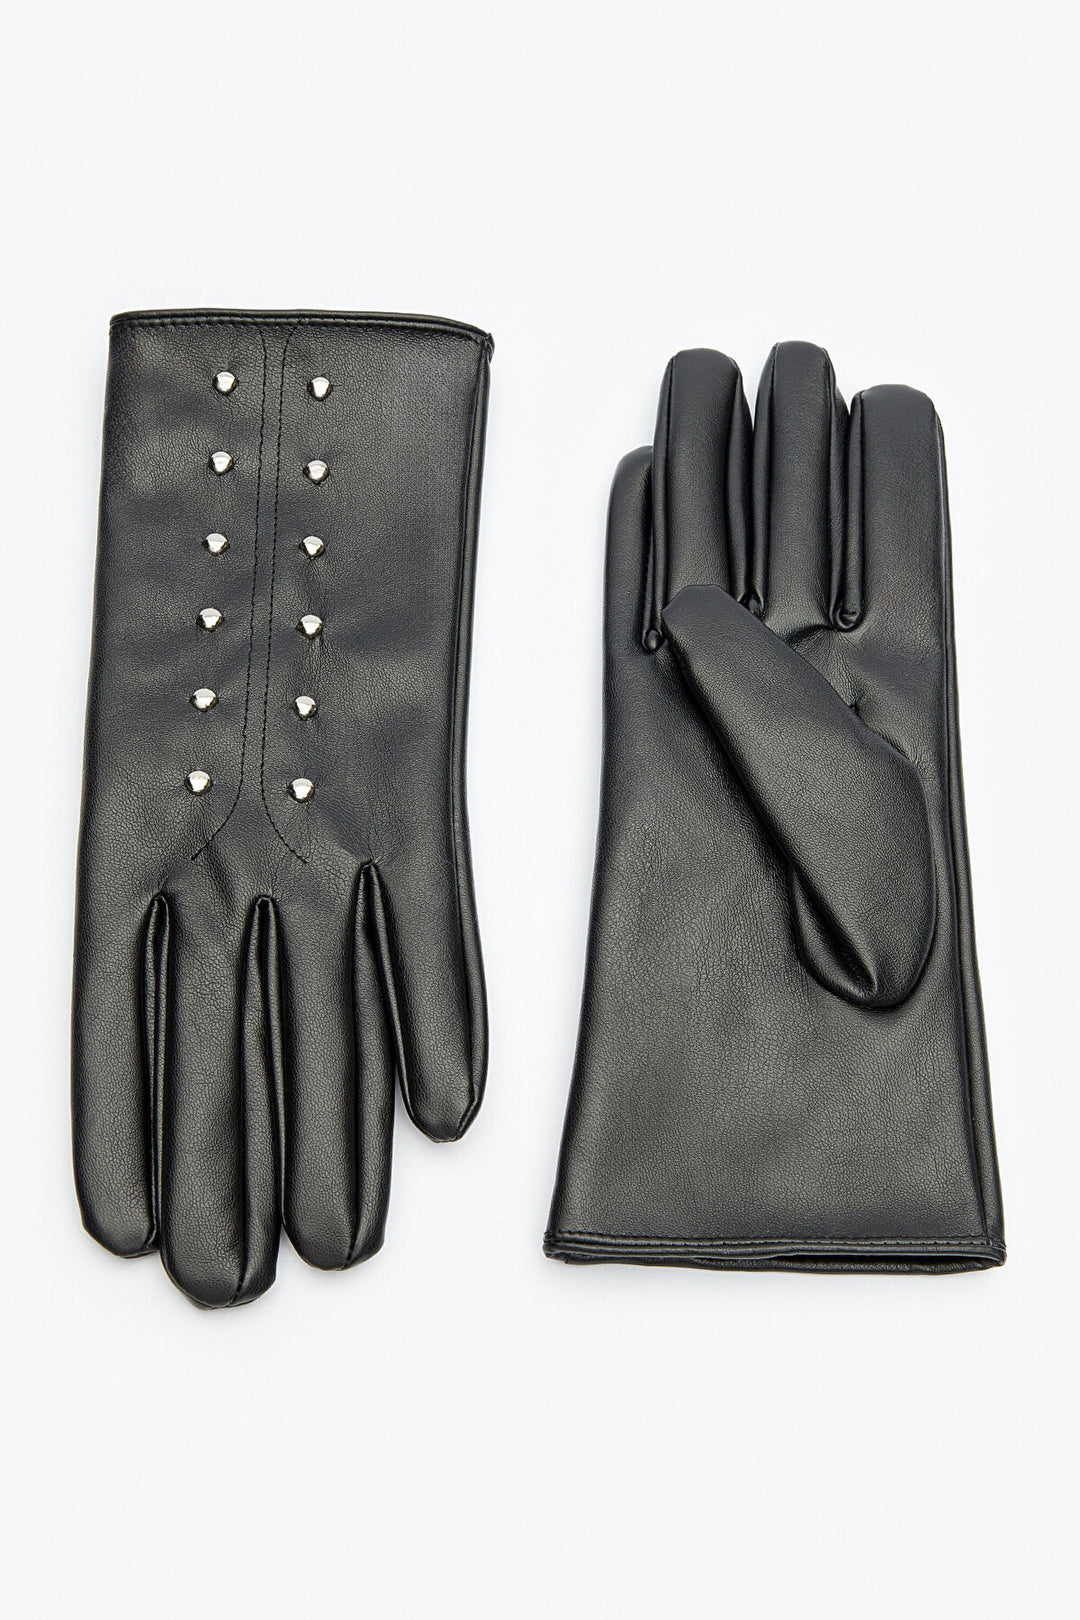 Madeleine Black Glove